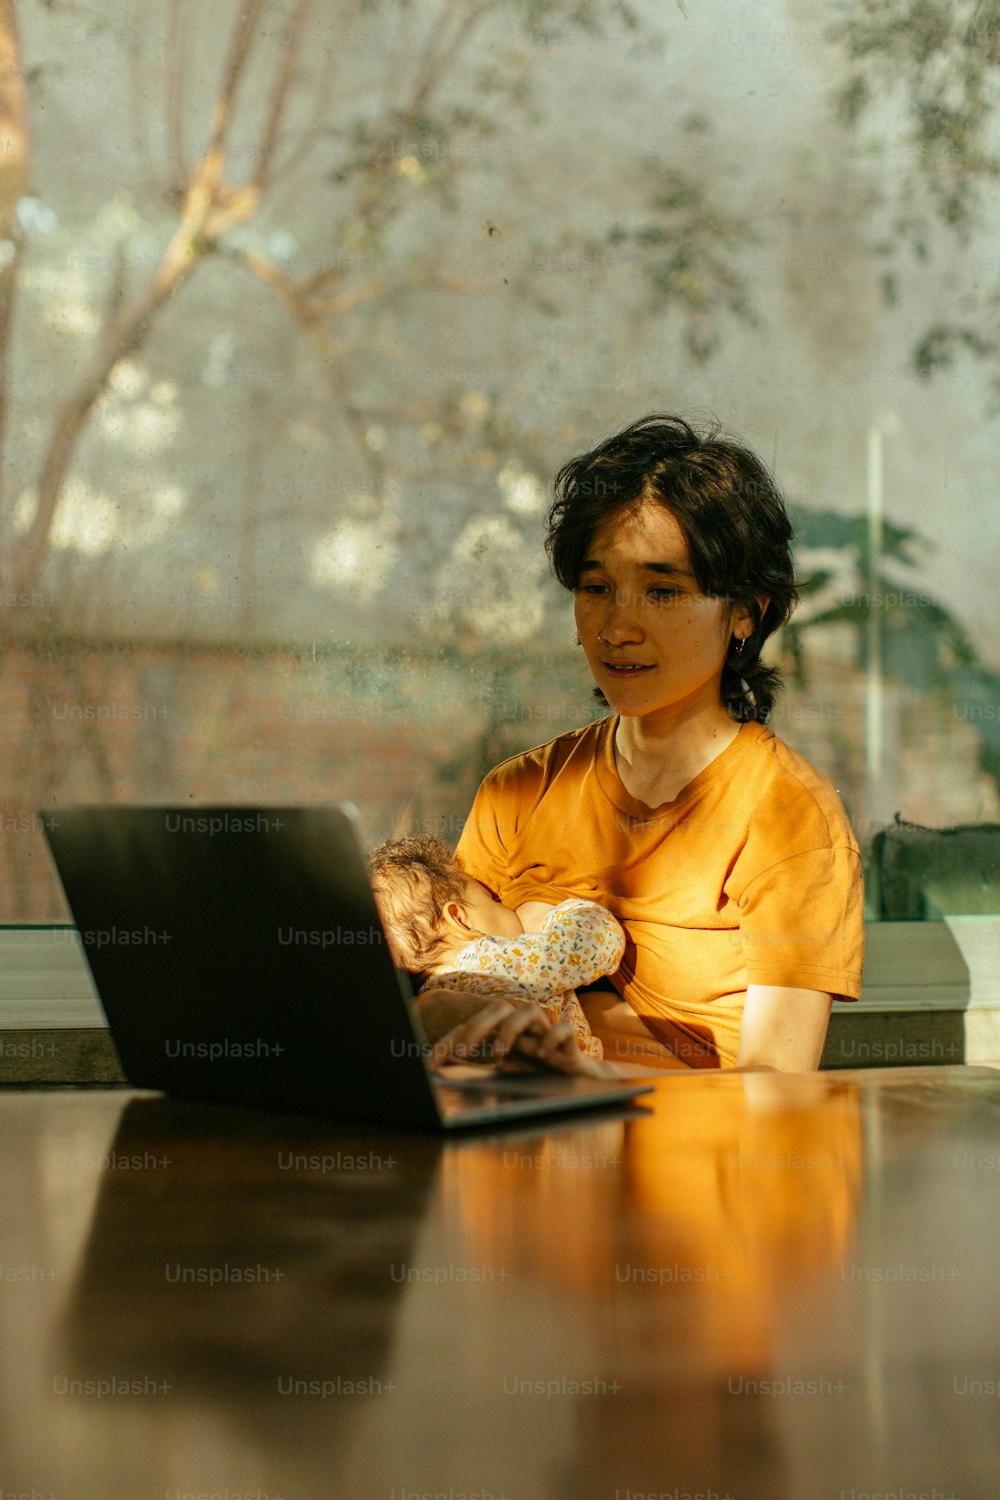 노트북이 있는 테이블에 앉아 있는 여자